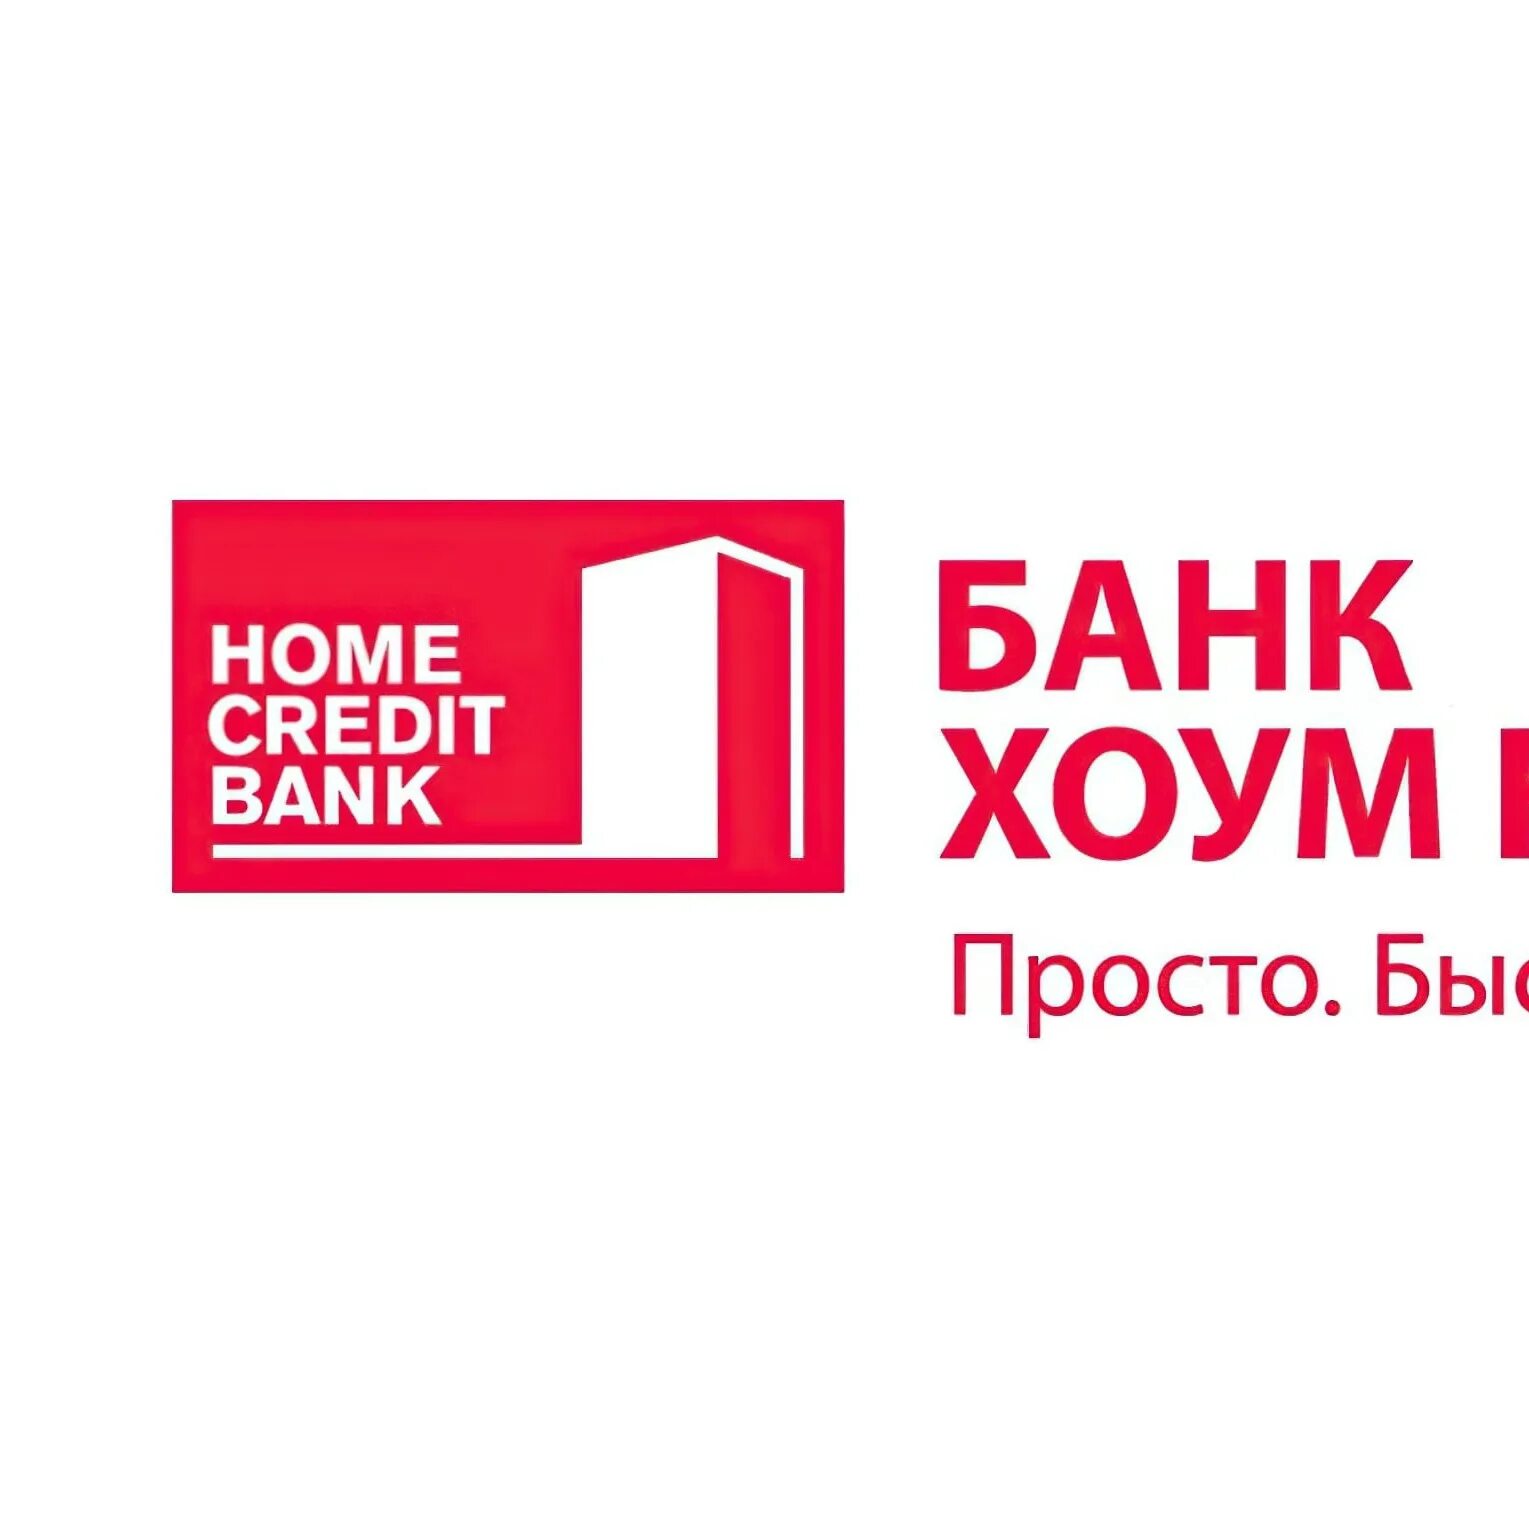 Ном кредит. Хоум кредит. Банк Home credit. Логотип хоум банка. Хоум кредитный банк.